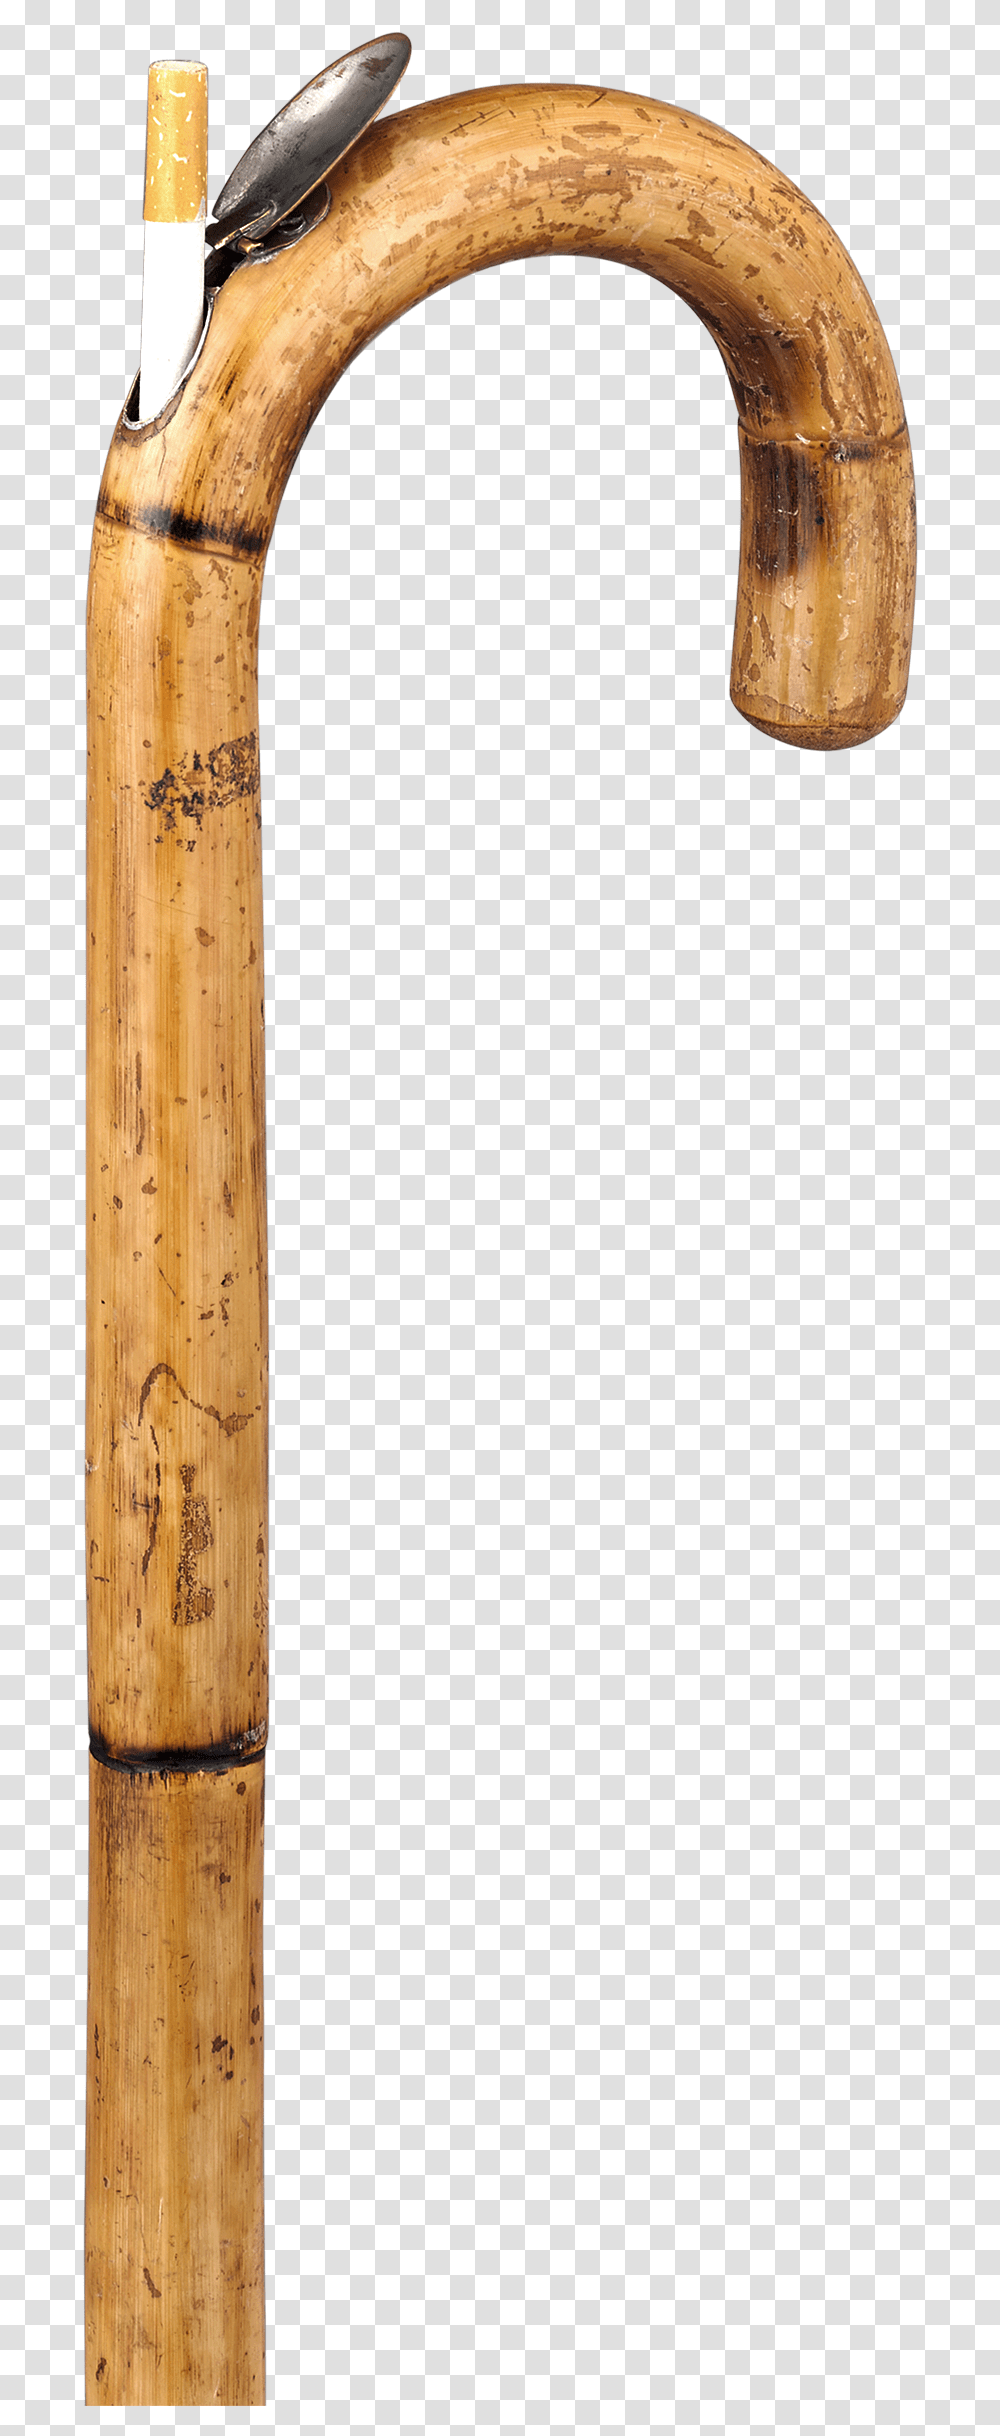 Cigarette Dispensing Cane Cigarette Stick, Hammer, Wood, Fence, Tree Transparent Png